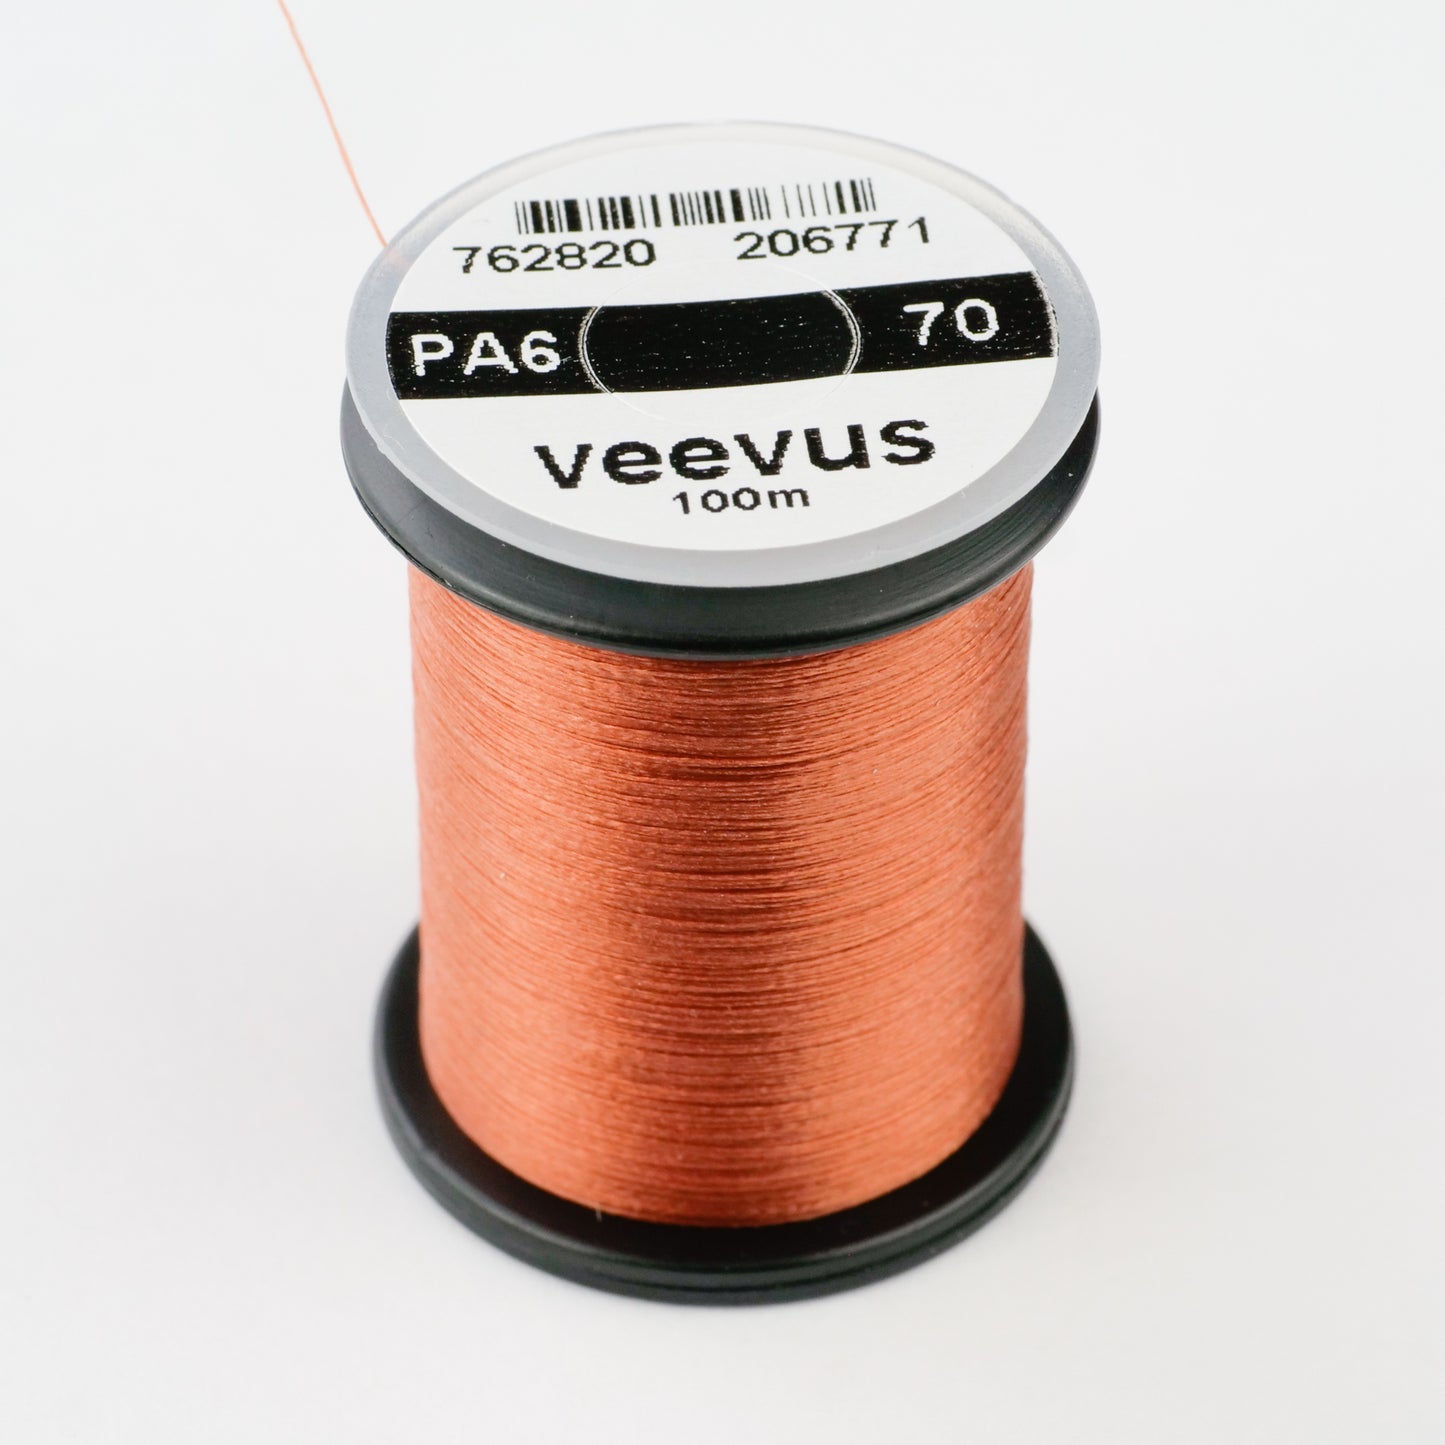 Veevus Power Thread 70D no